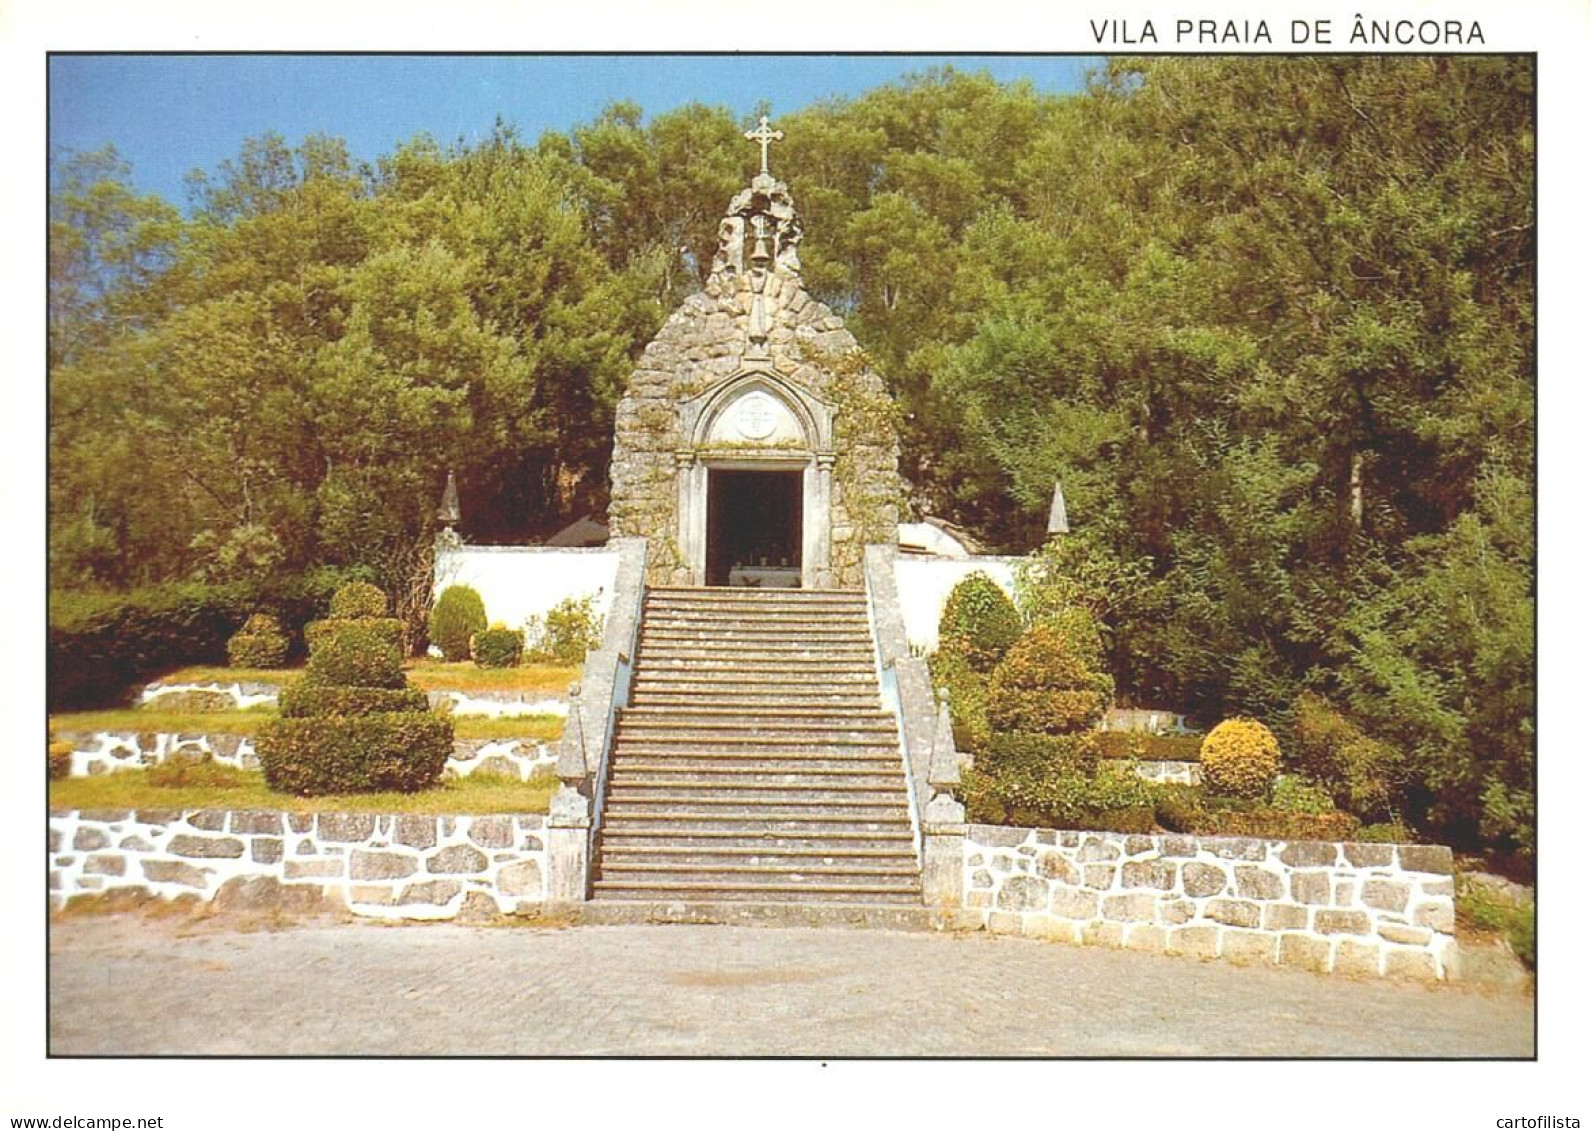 VILA PRAIA DE ANCORA, Caminha - Gruta De Nª. Srª De Lourdes  (2 Scans) - Viana Do Castelo